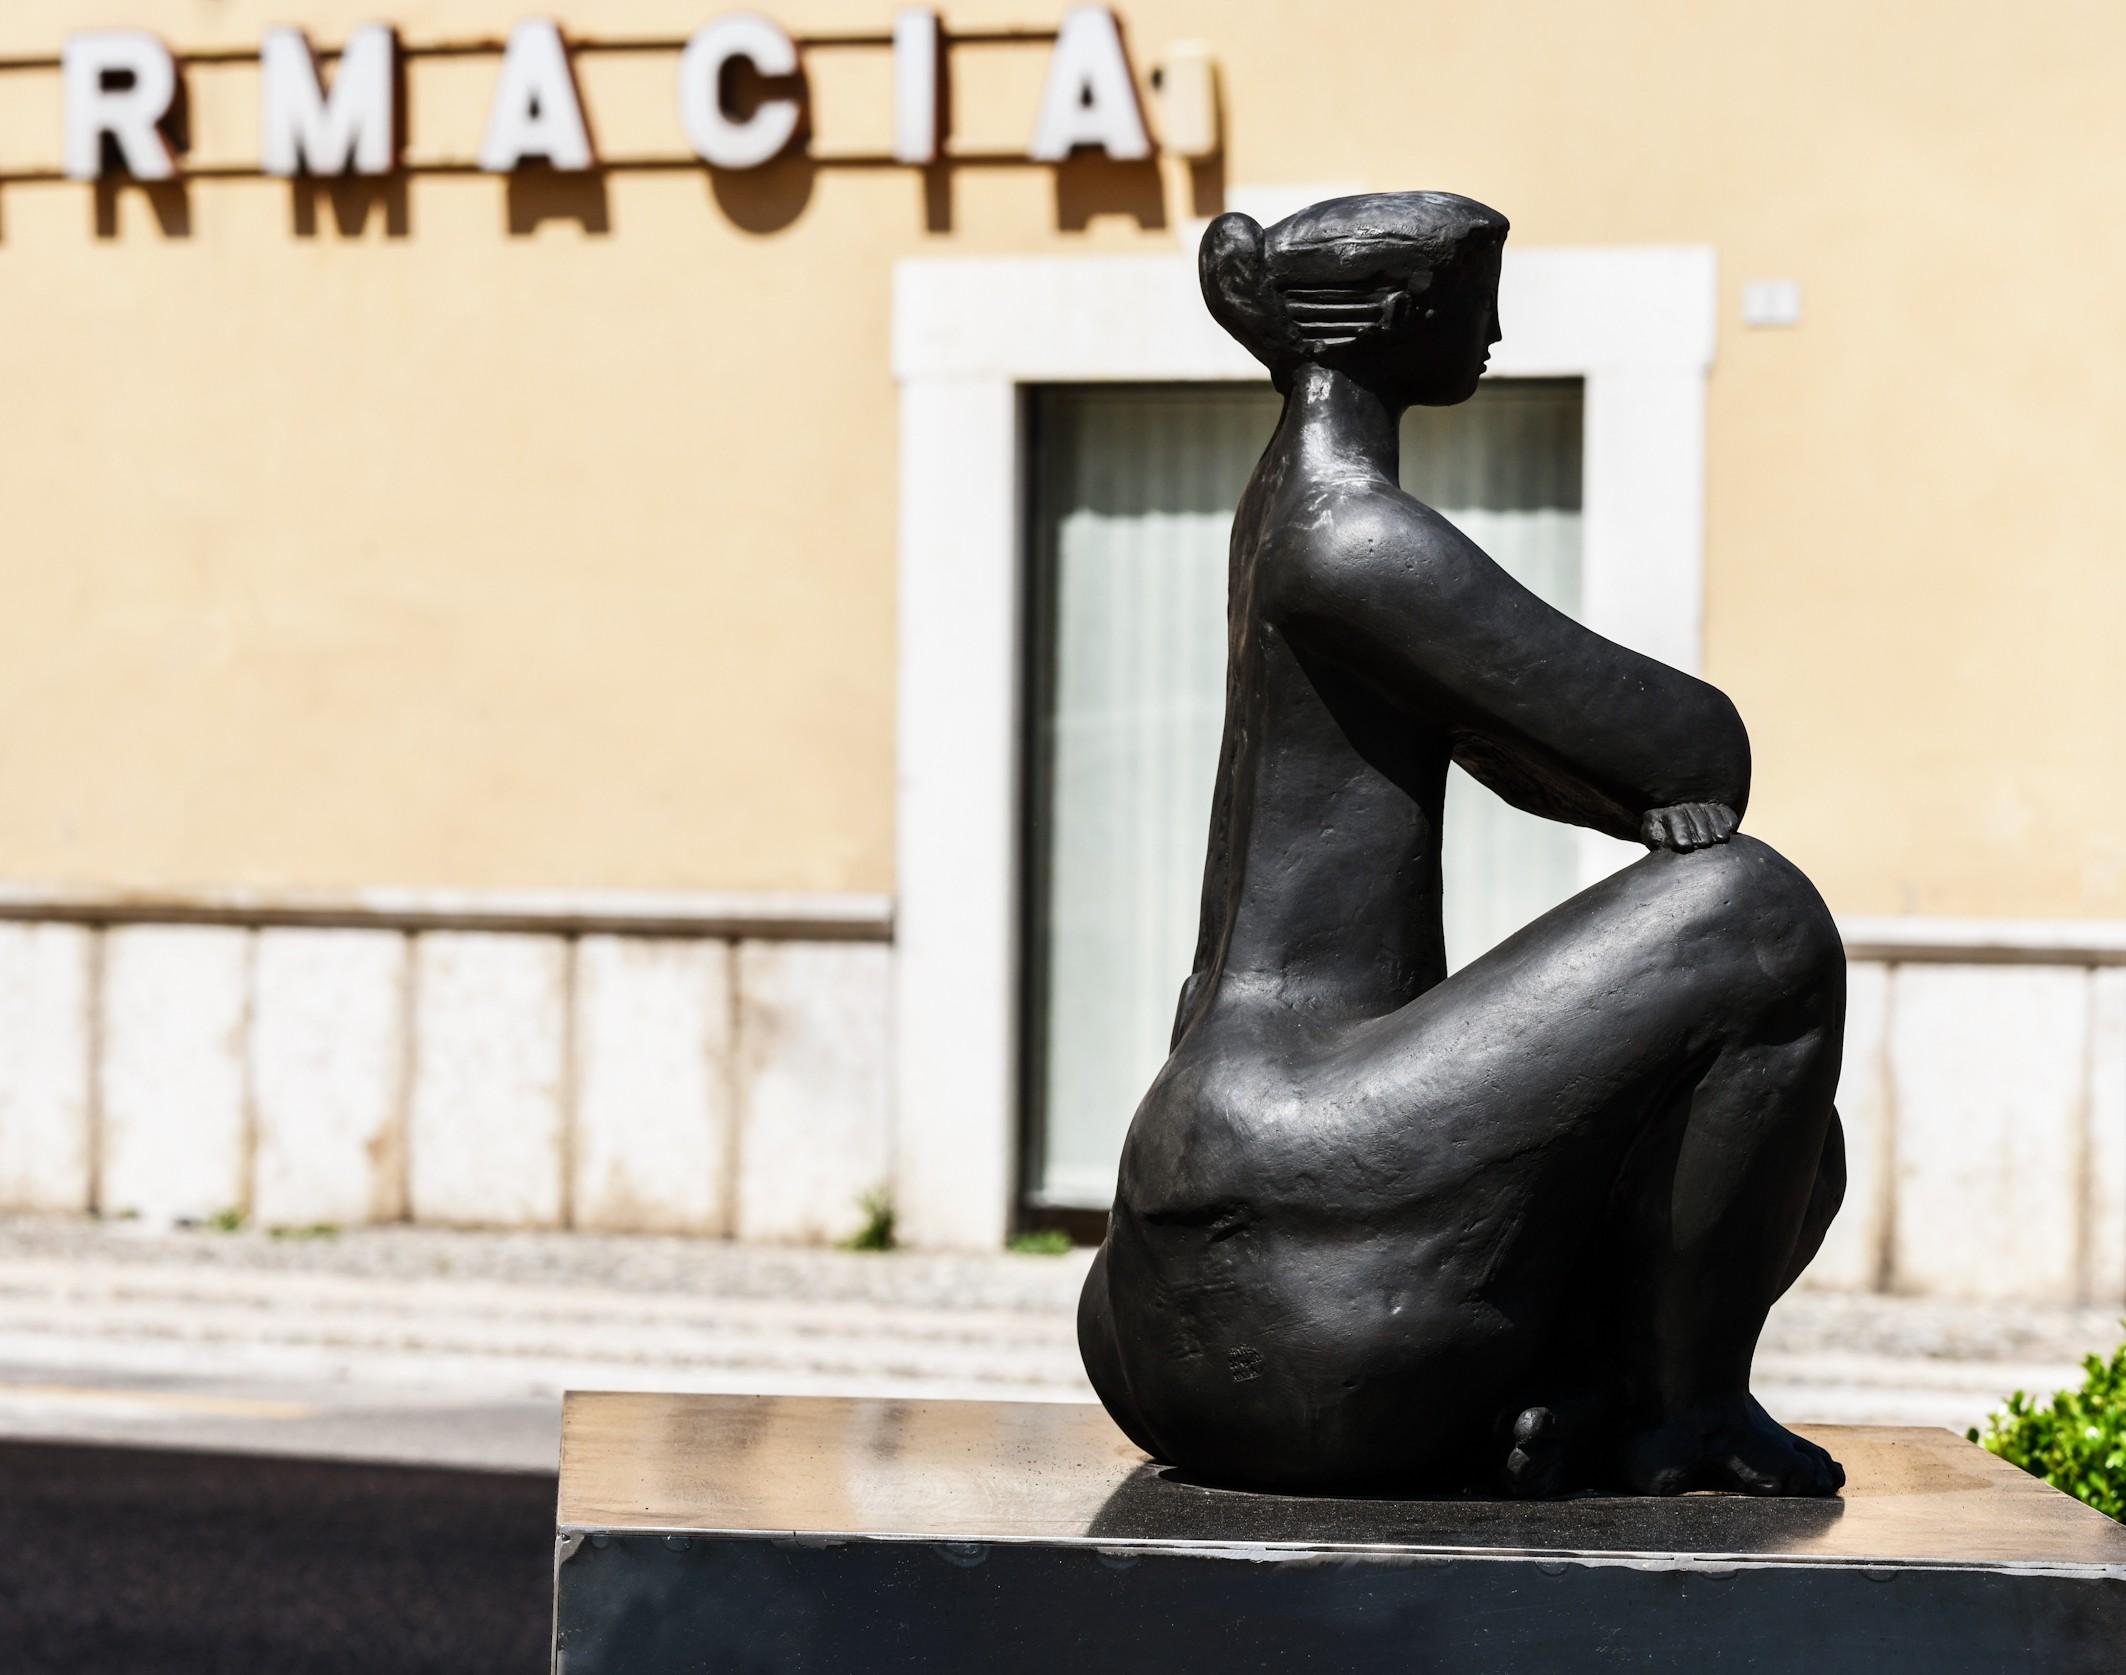 Nummeriert und limitiert auf 8 Exemplare 
Signiertes Kunstwerk
Authentizität: Verkauft mit Echtheitszertifikat von der Indivision Antoniucci Volti
Rechnung der Galerie
Skulptur: Bronze, Metall, Bronzepatina

Aufstellen: Die Skulptur kann im Freien